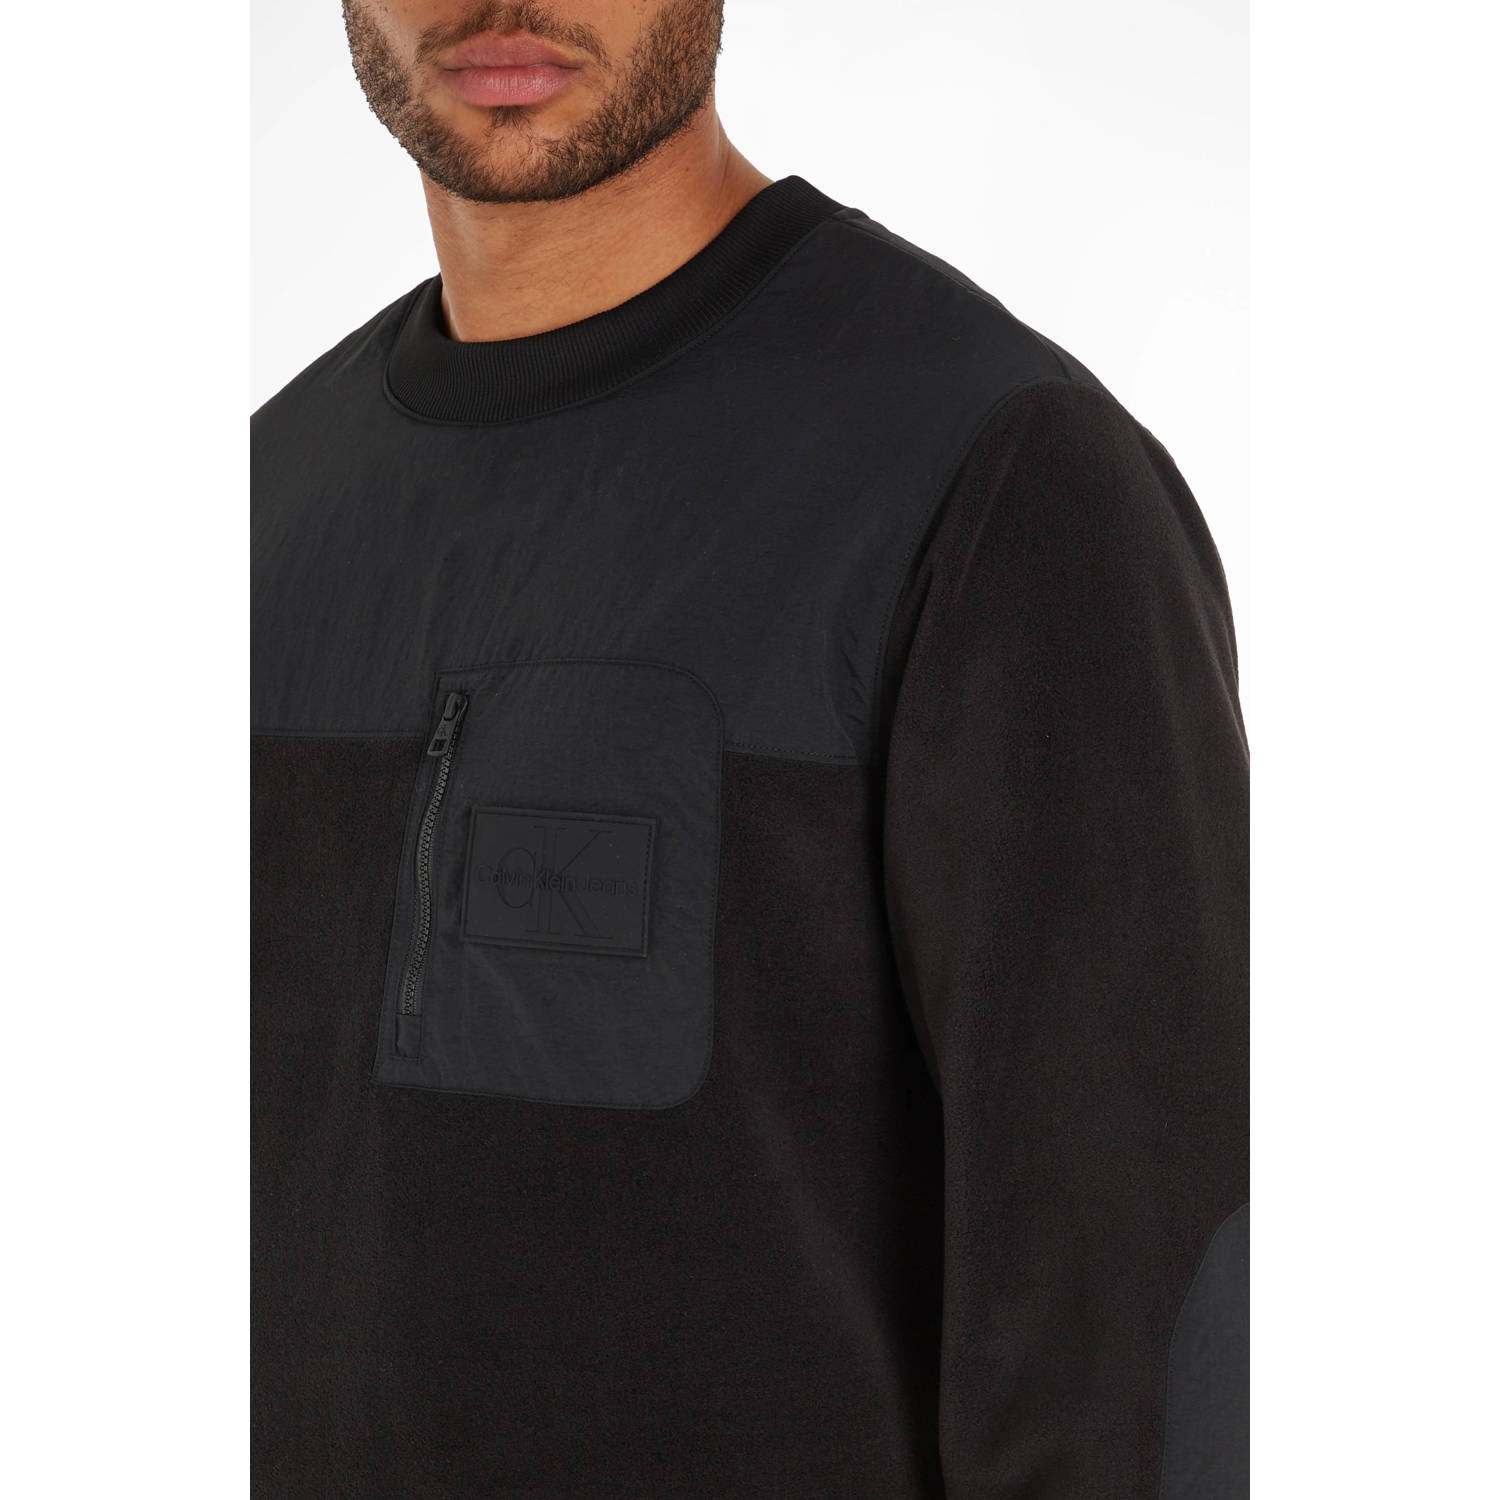 CALVIN KLEIN JEANS fleece sweater met printopdruk black